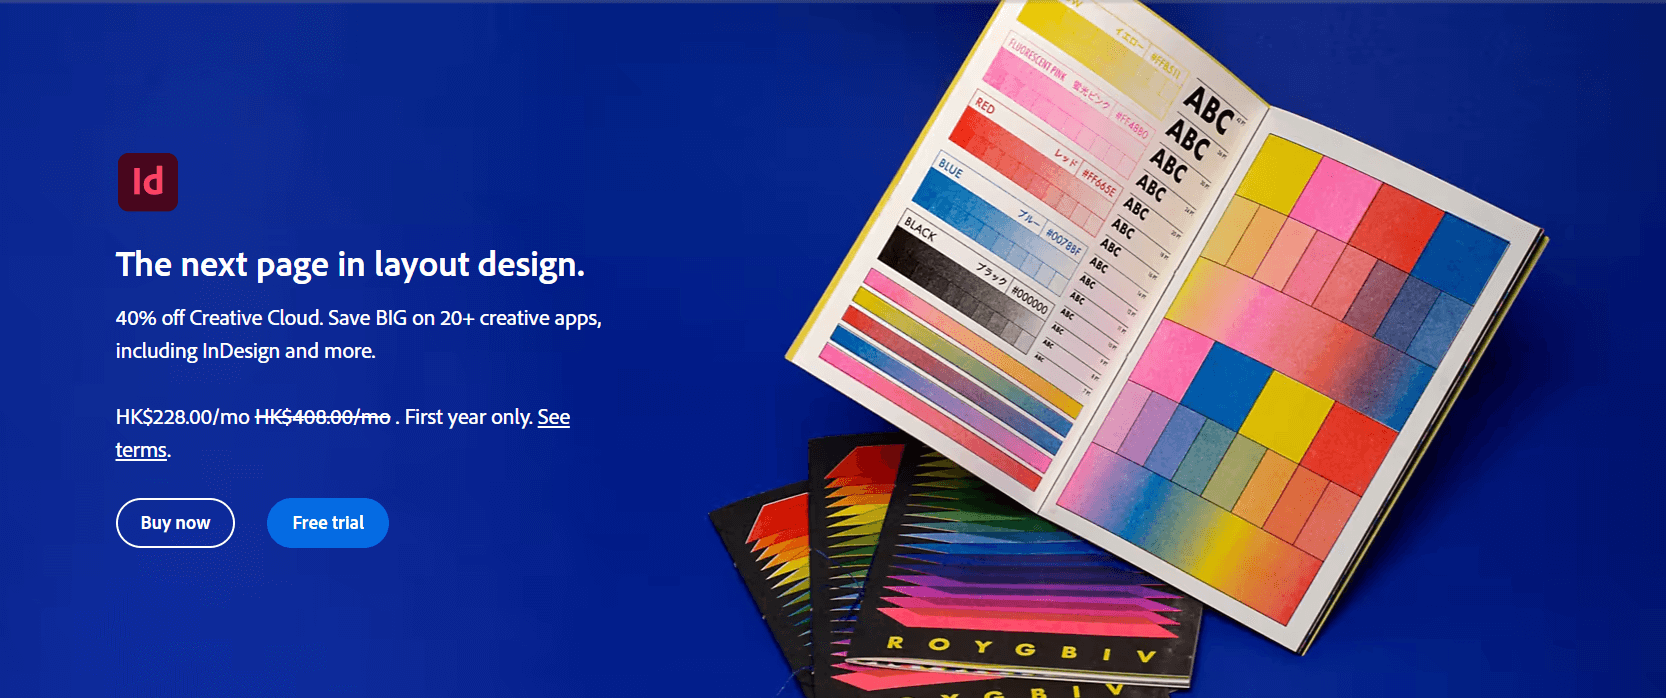 平面广告设计软件Adobe InDesign